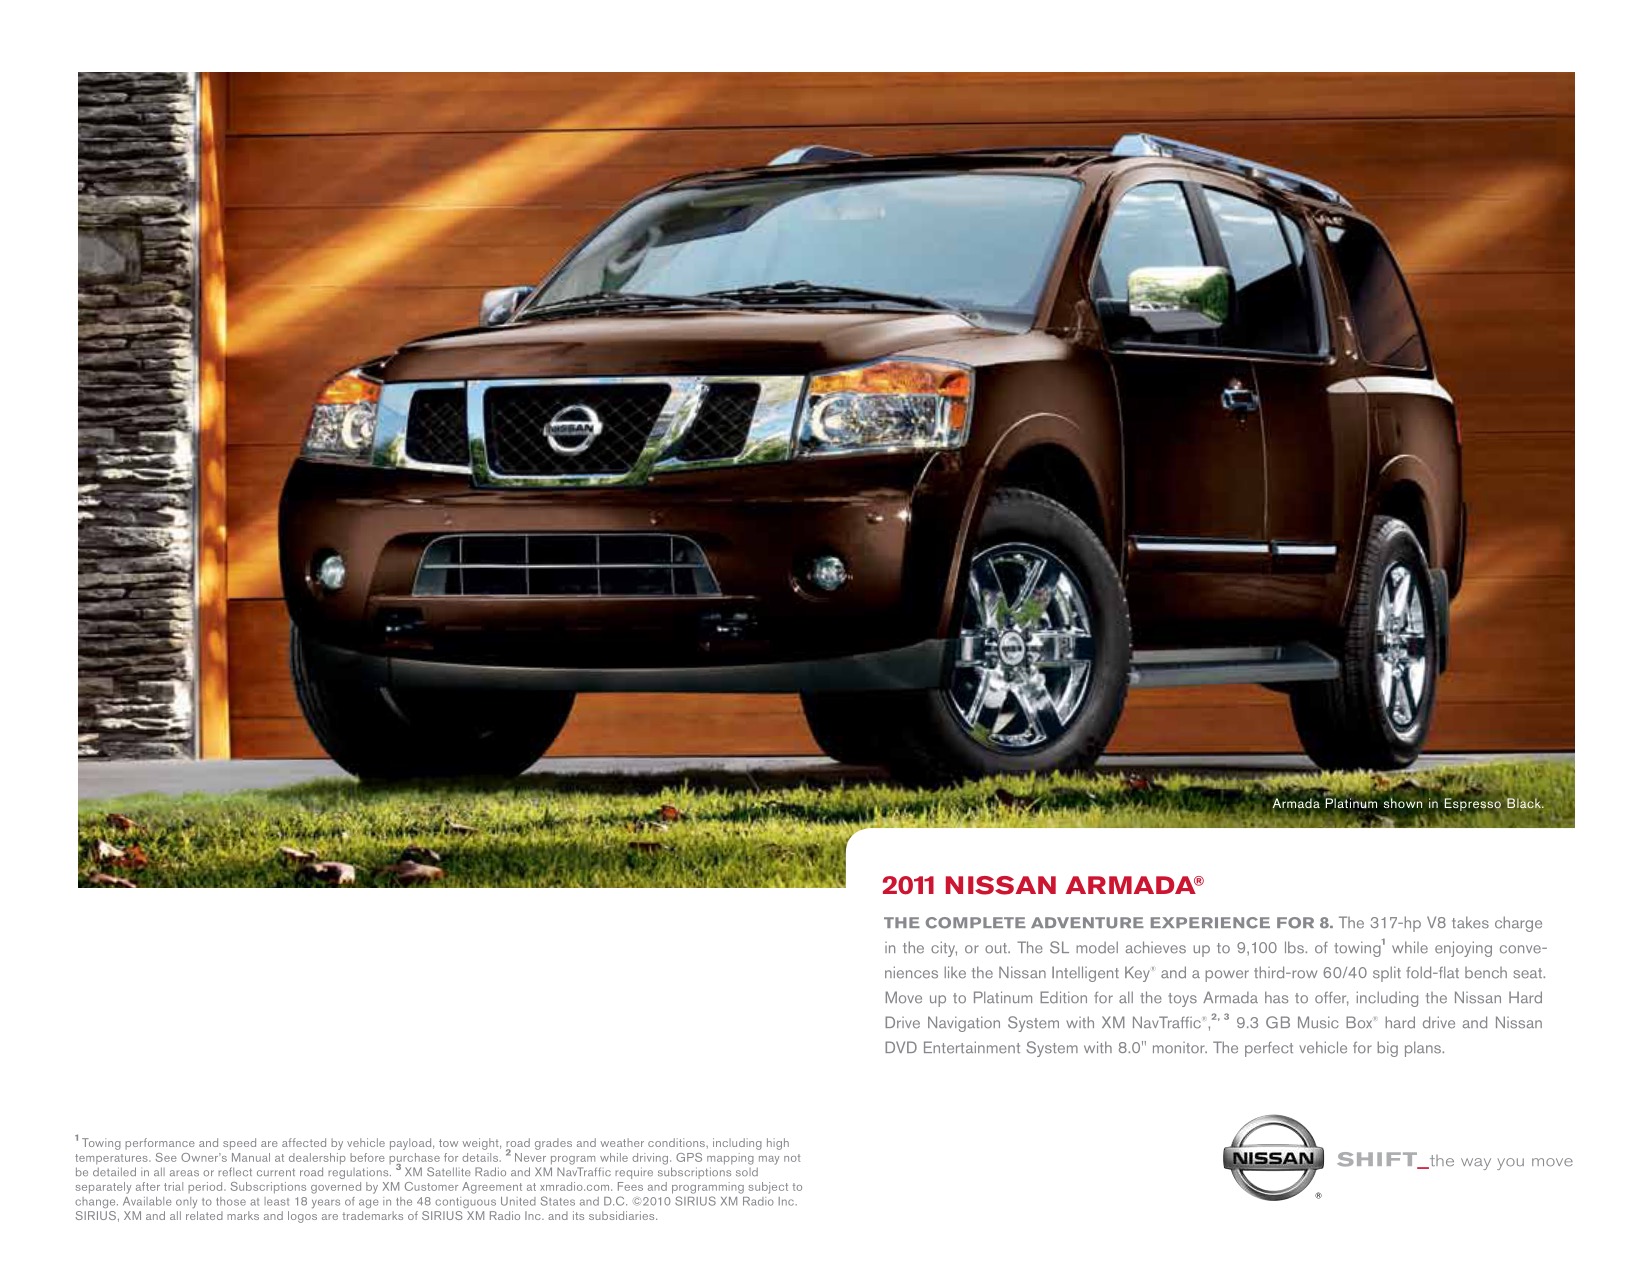 2011 Nissan Armada Brochure